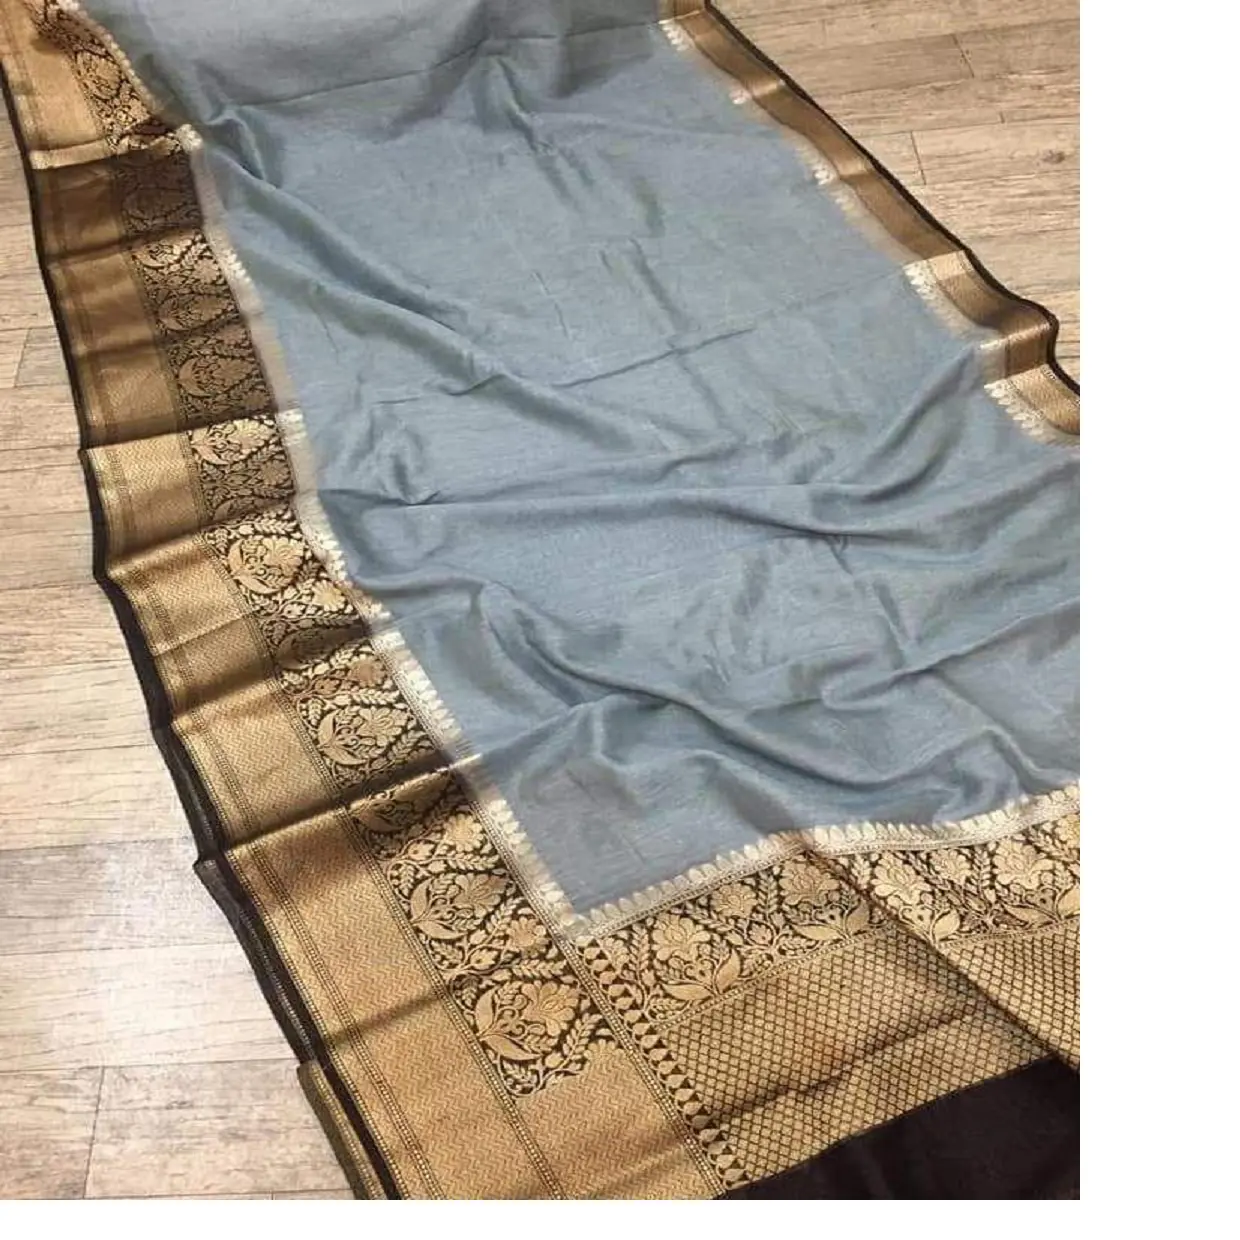 מותאם אישית עשה ב sarees צבע כחול בהיר עשוי עם גבולות זארי זהב אידיאלי עבור חנות מוצרי טקסטיל הודית